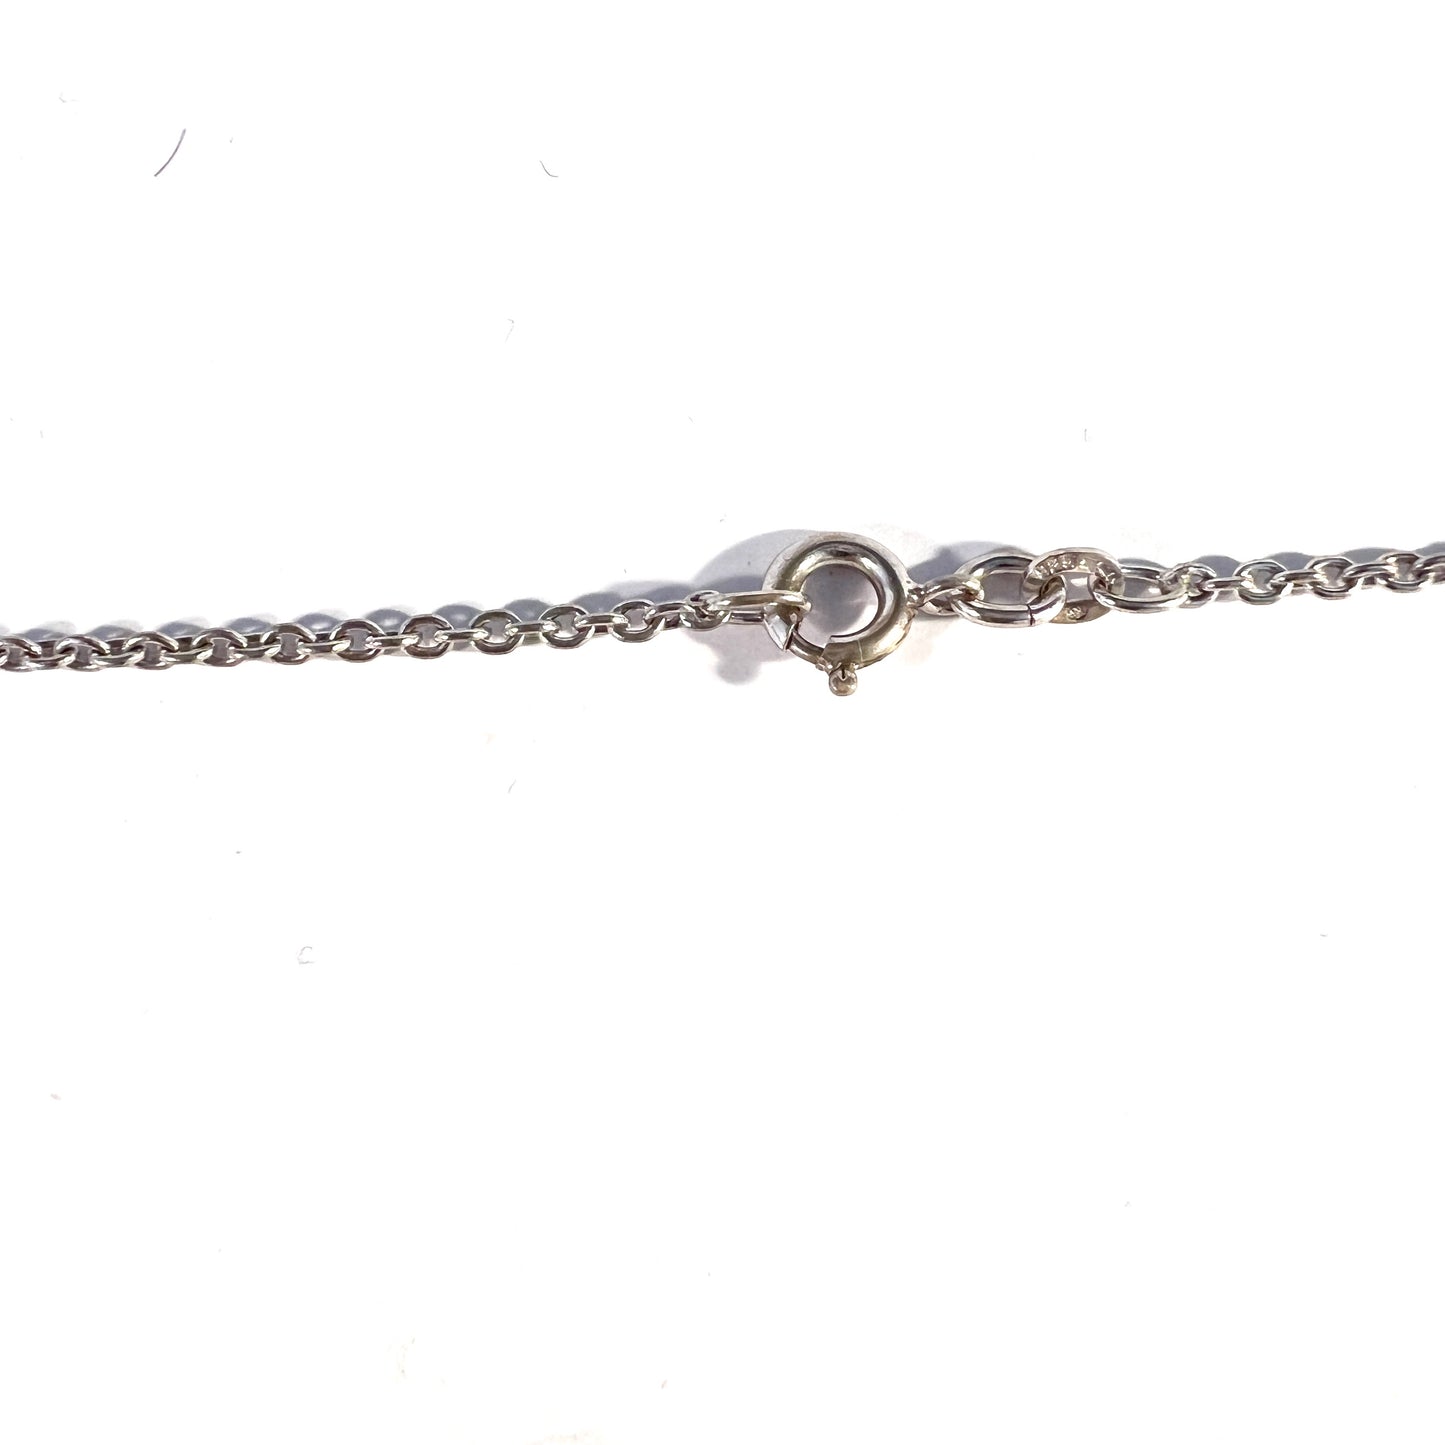 Kollmar & Jourdan, Germany 1960-70s, Vintage Sterling Silver Pendant Long Chain Necklace.